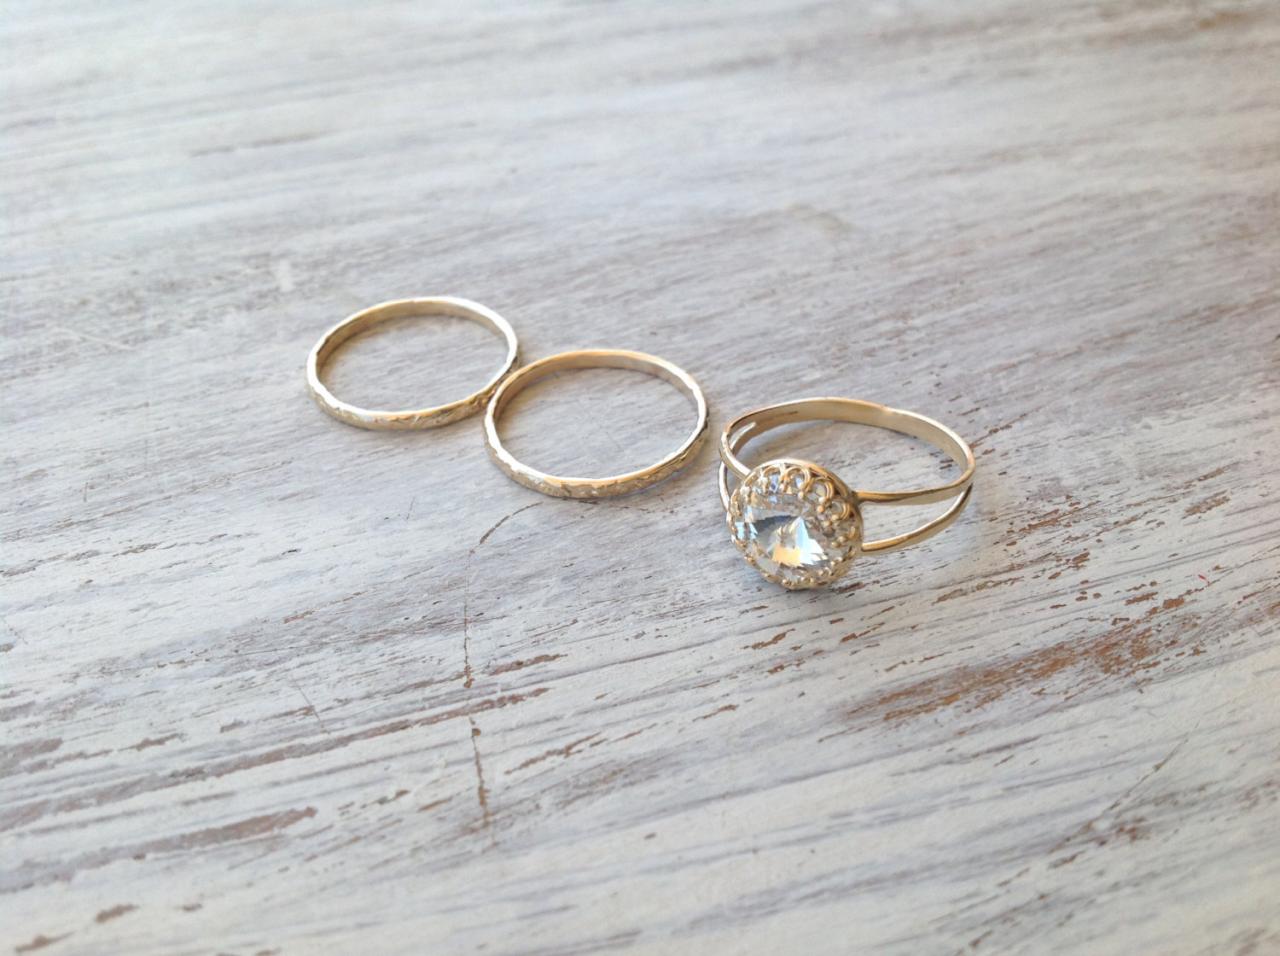 Set Of 3 Rings - Gold Ring, 3 Stacking Ring, Vintage Ring, Gold Rings, Clear Crystal Ring, Stack Gold Ring